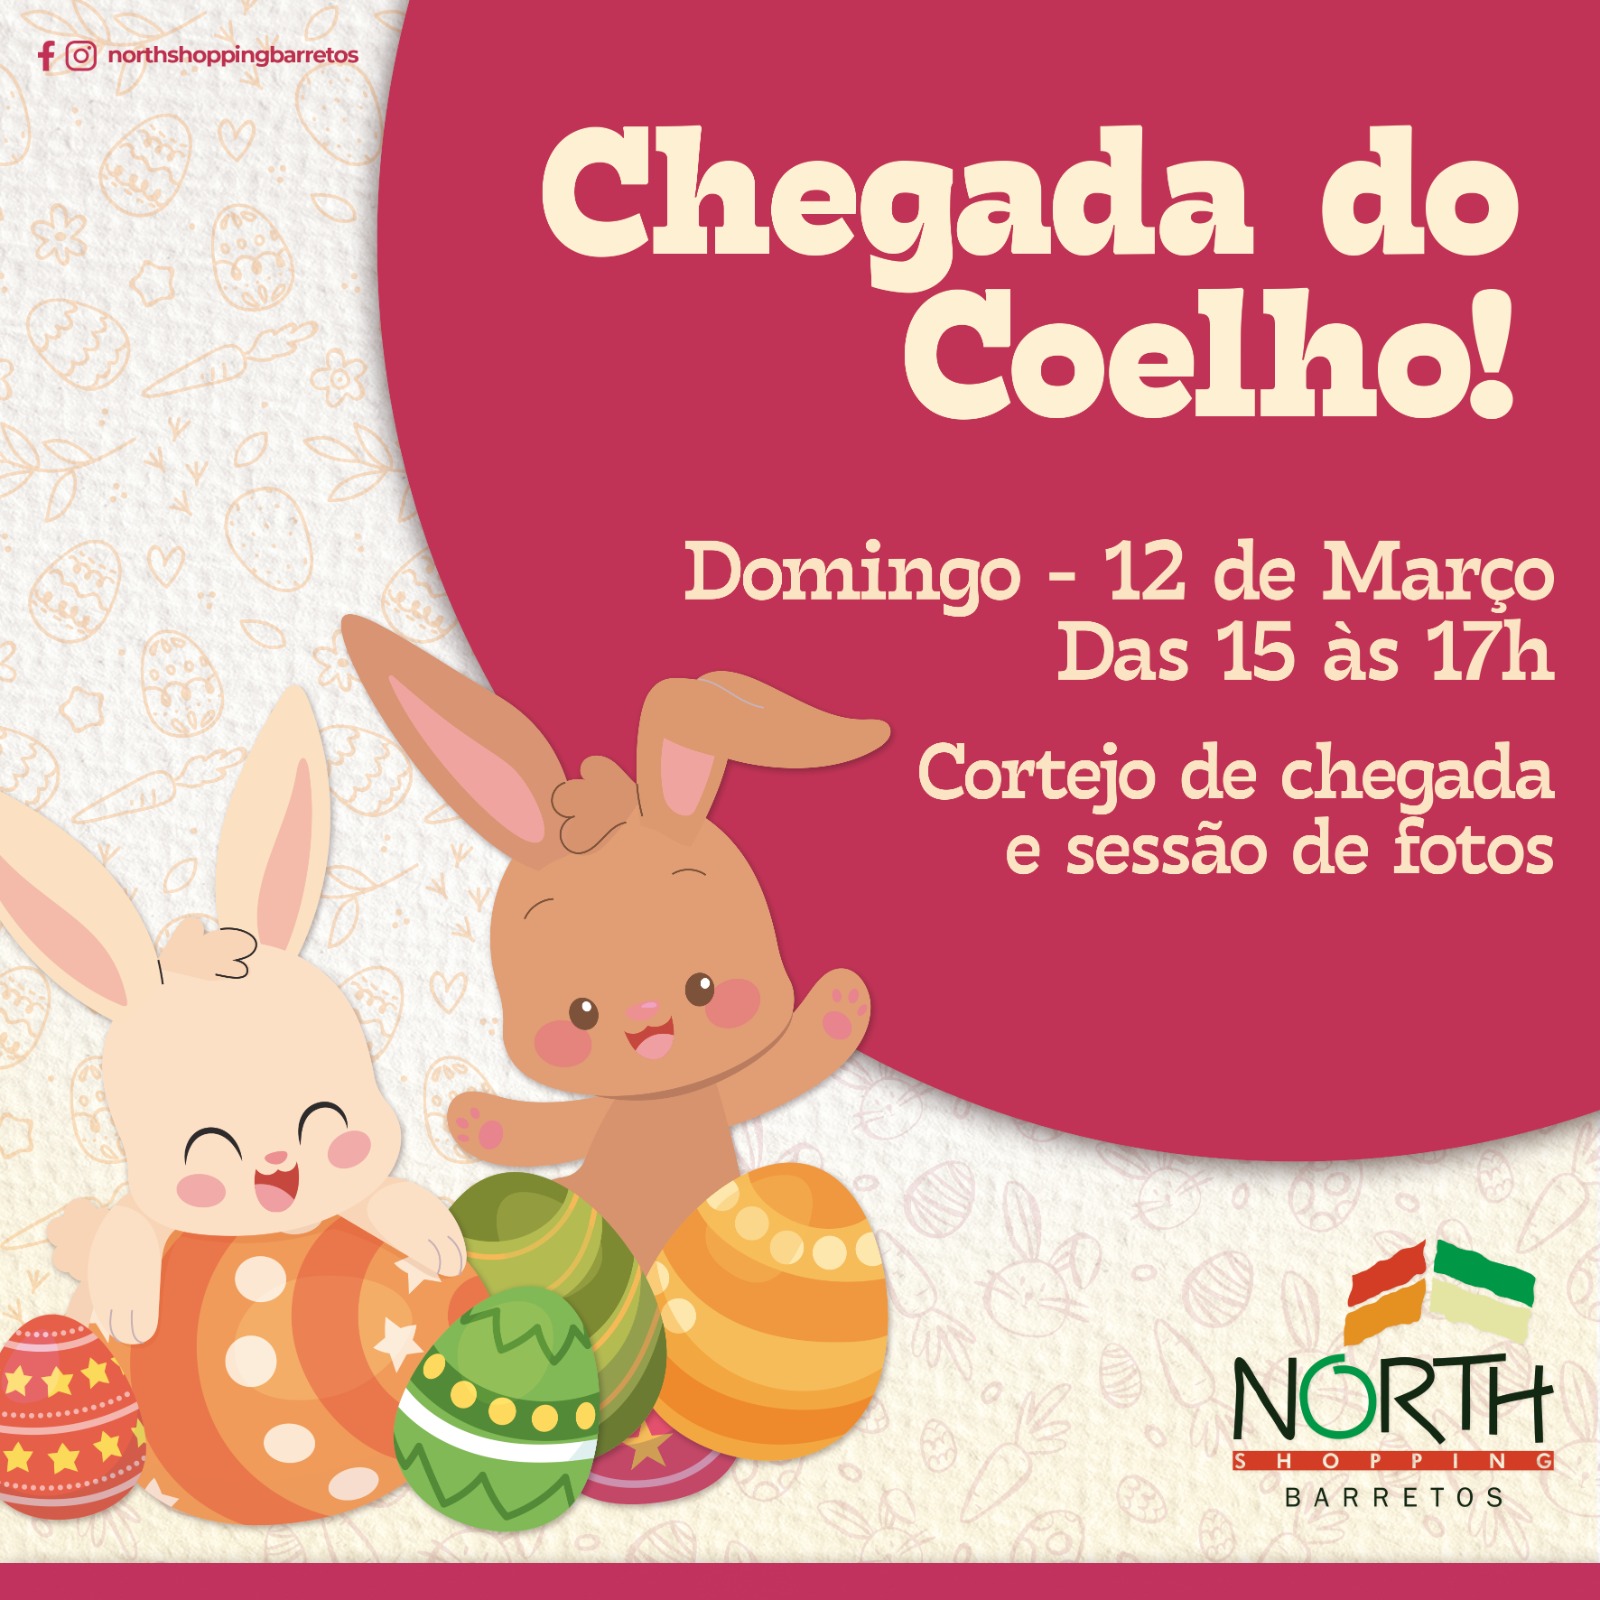 Páscoa em Barretos será aberta neste domingo,  12 de março, com a chegada do Coelho no North Shopping Barretos